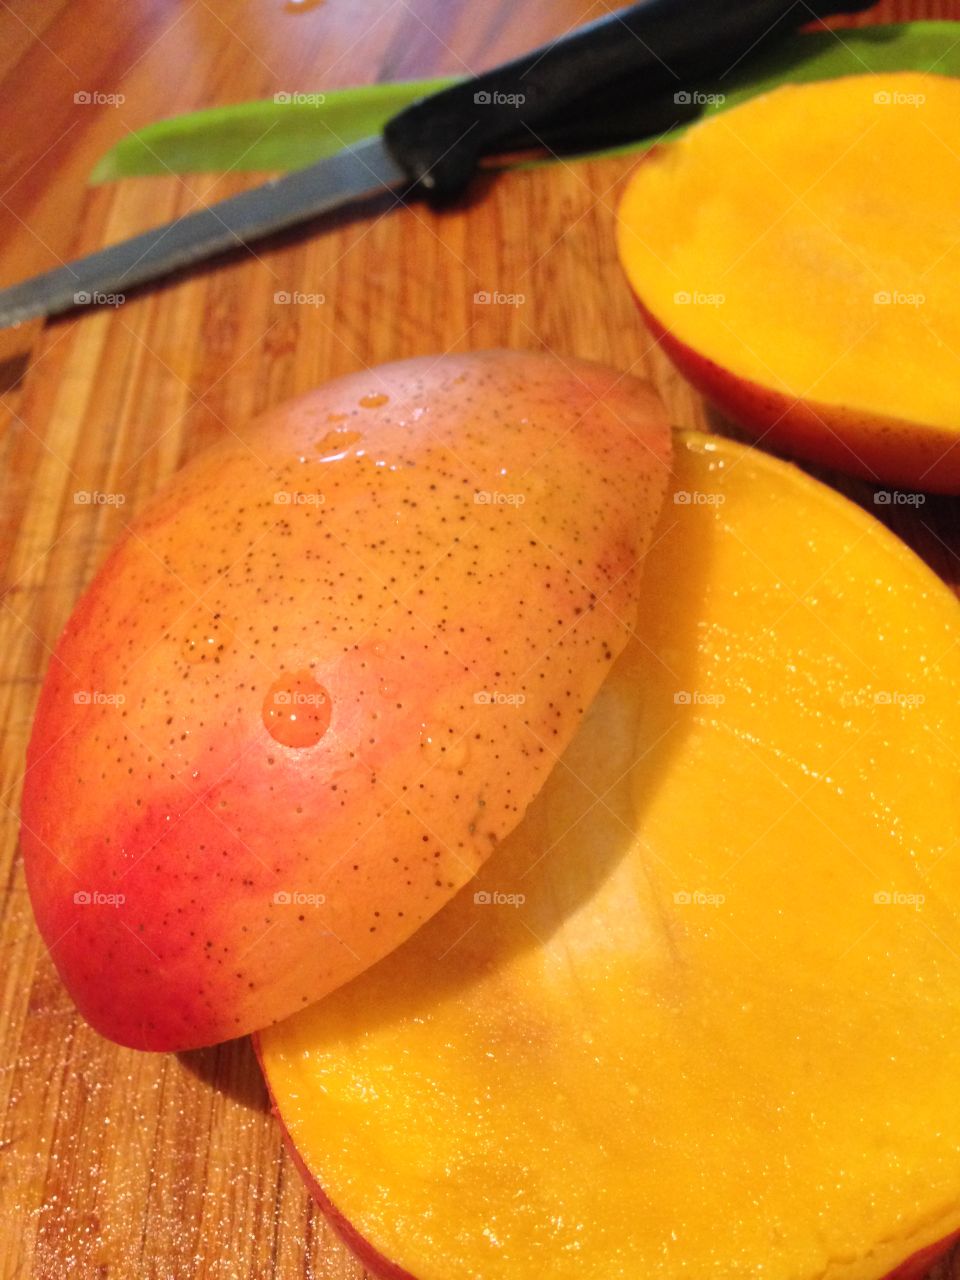 Juicy Mango 

Published by:
HappyBrownMonkey 